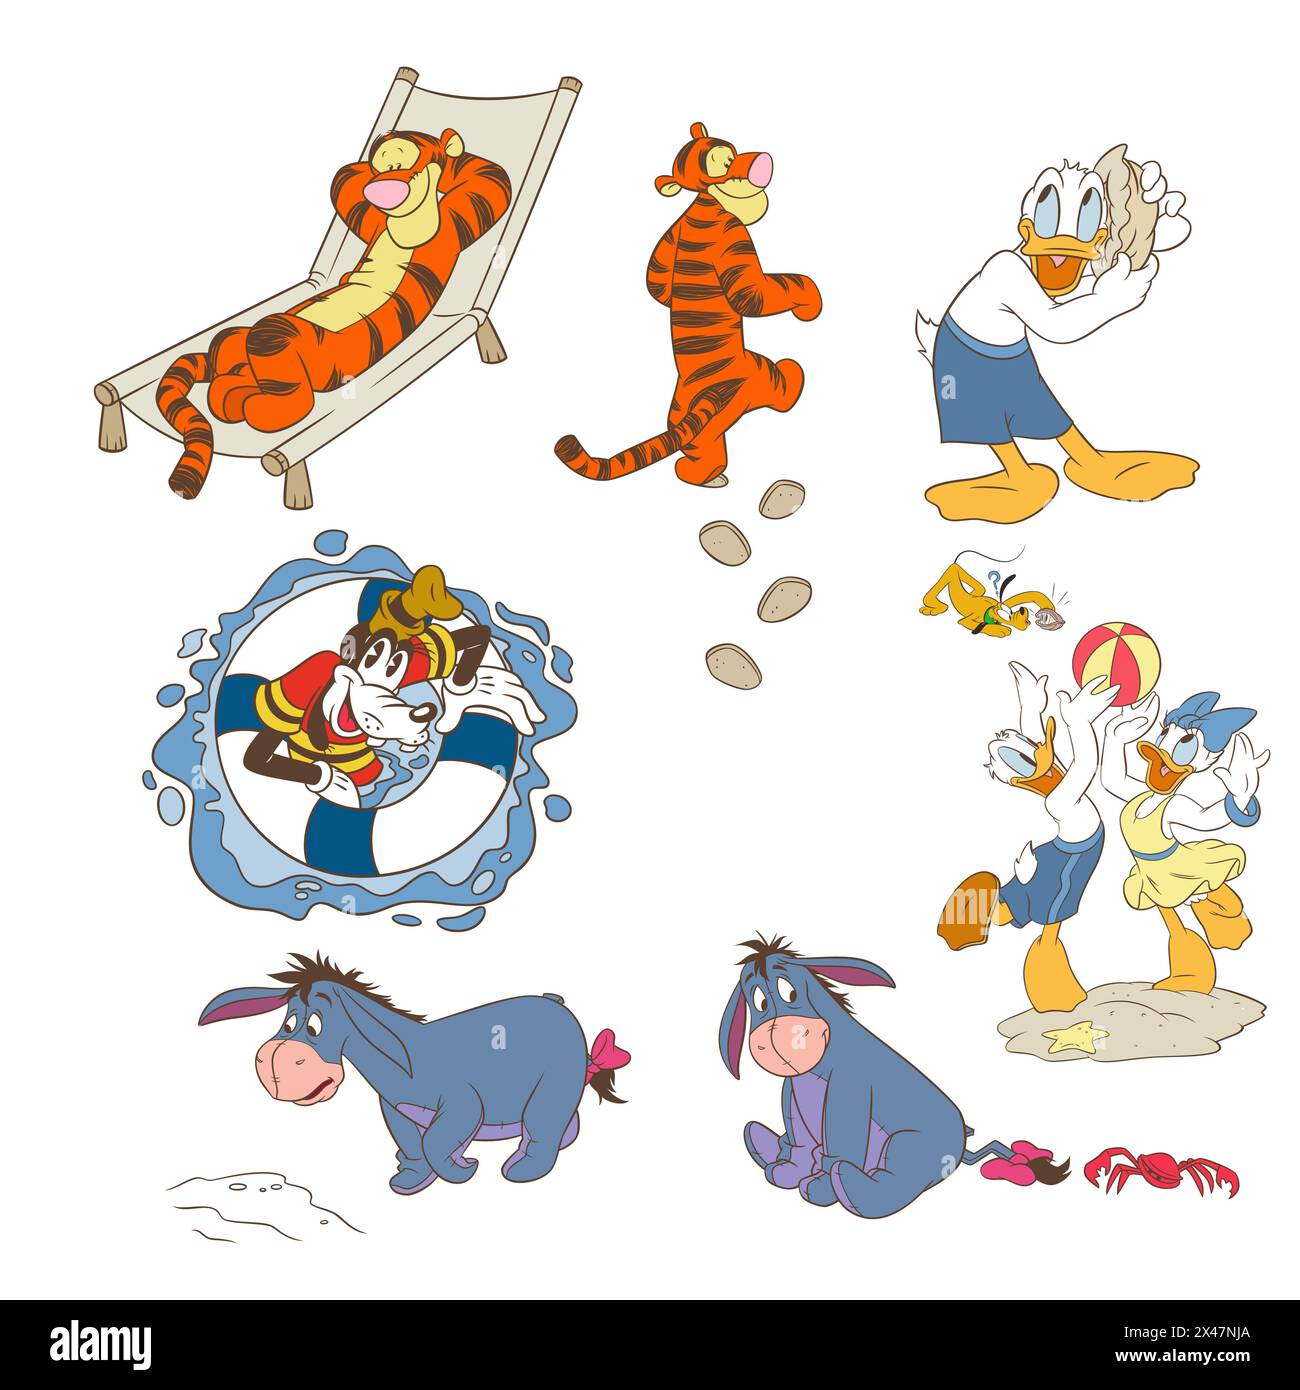 Disney Charakter Set Tigger donald Ente Goofy eeyore Vektor Illustration Kunst Stock Vektor